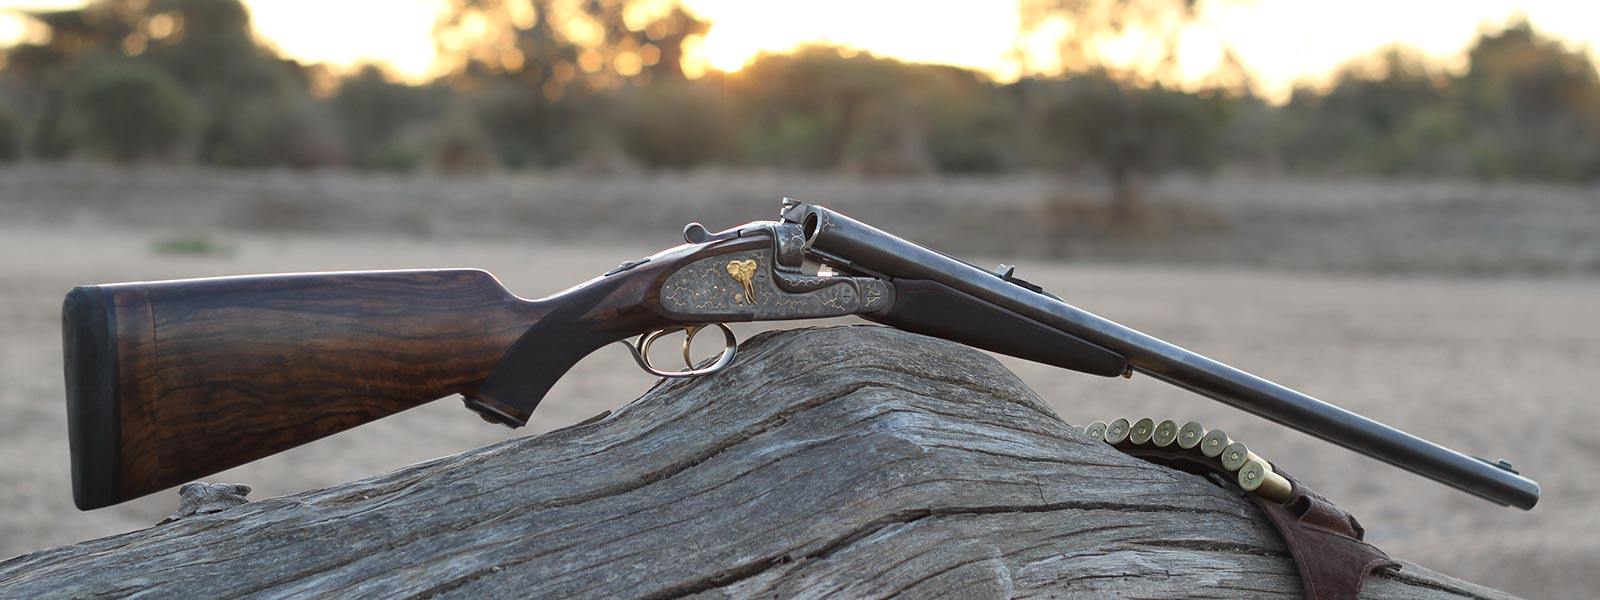 Dale Desfountain's gun in the African bush